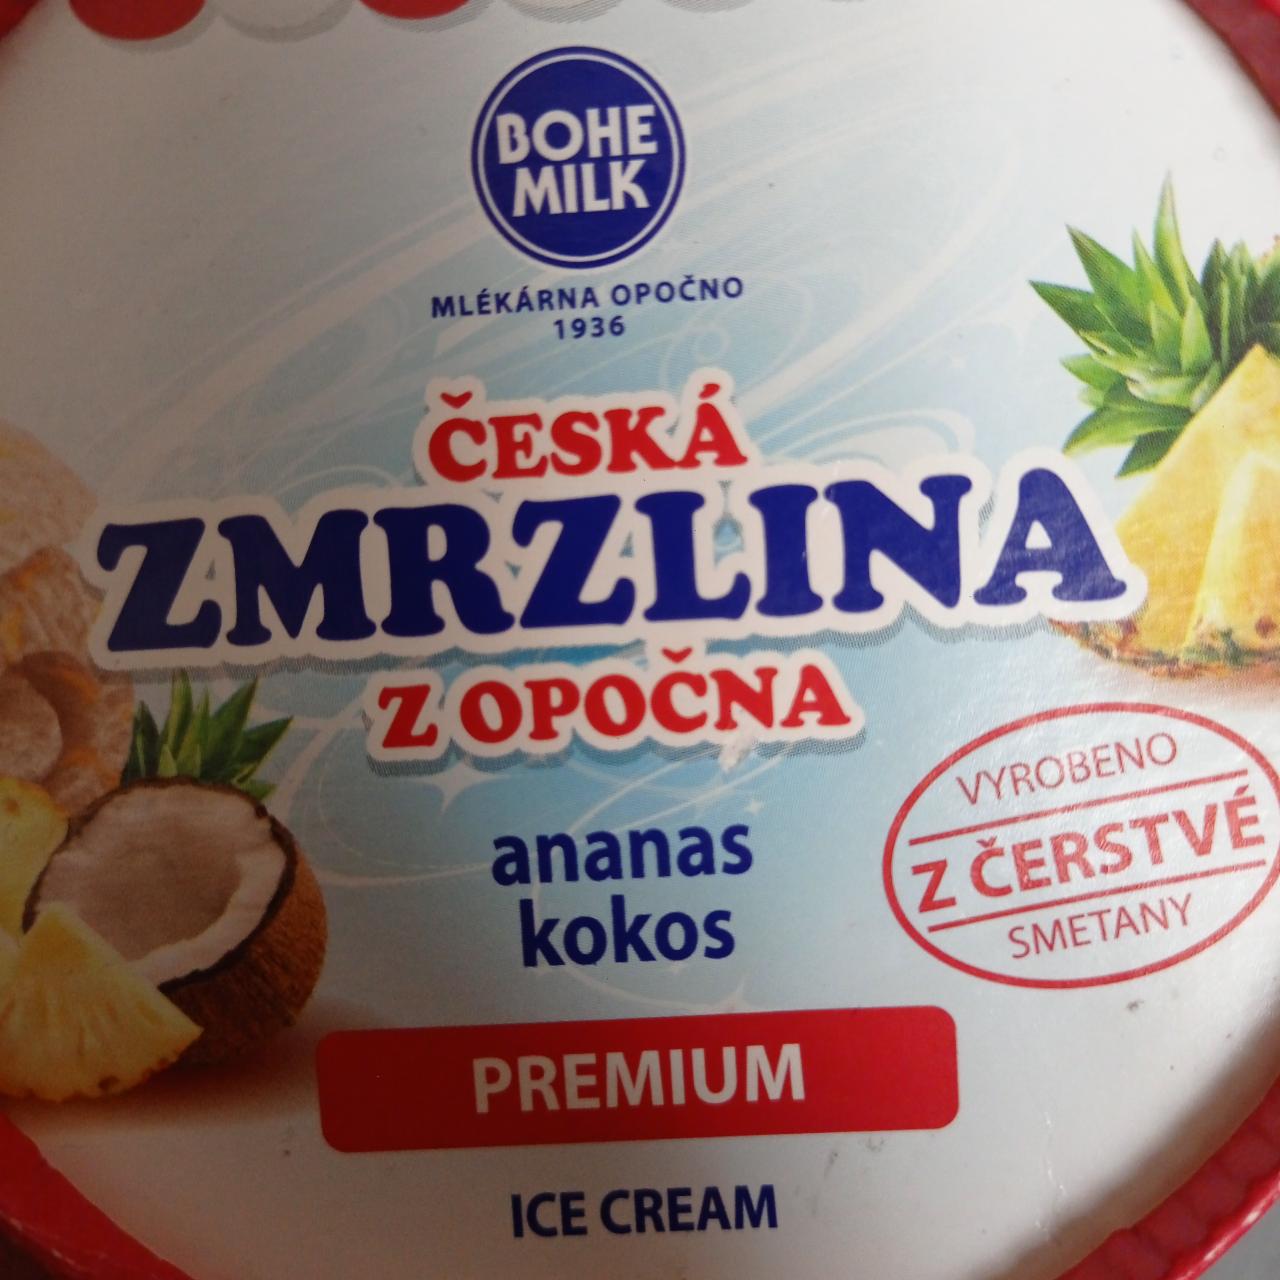 Fotografie - Česká zmrzlina z Opočna ananas kokos